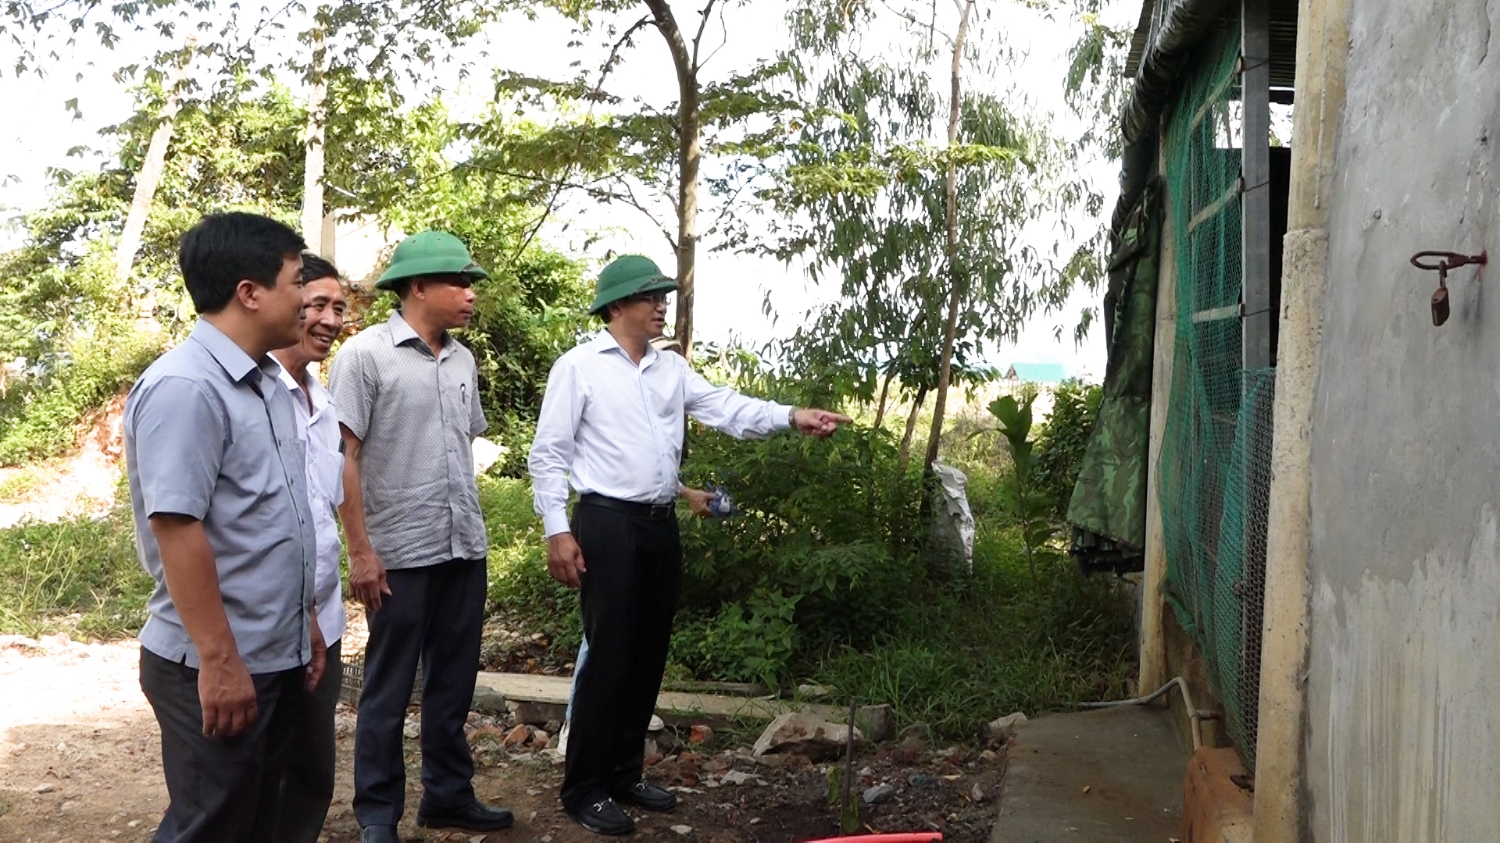 Đồng chí Bí thư Thị ủy kiểm tra mô hình nuôi lợn hữu cơ của ông Trương Thanh Tâm